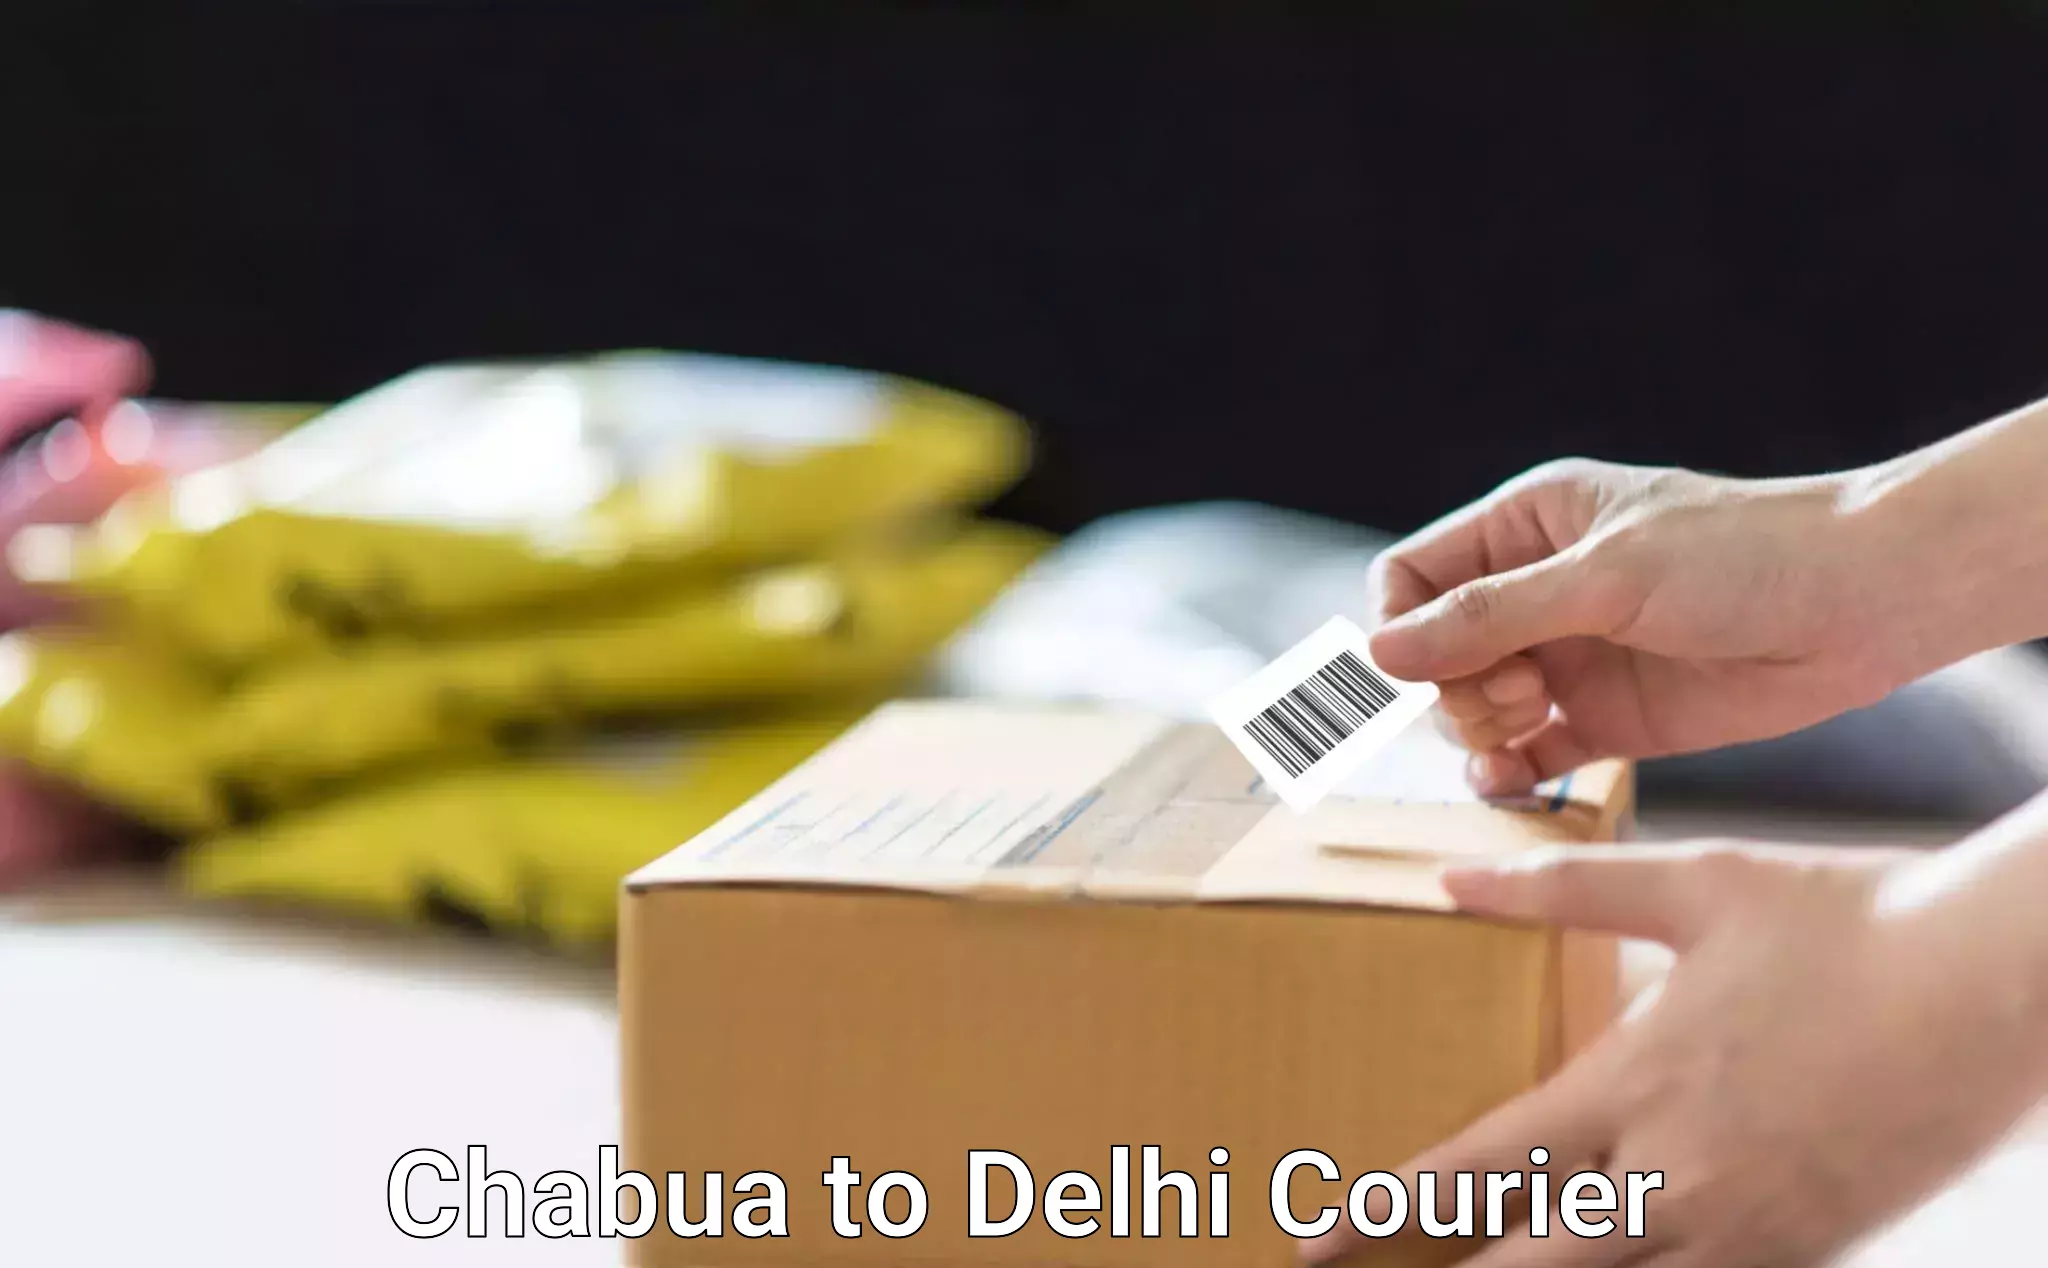 Express logistics Chabua to Delhi